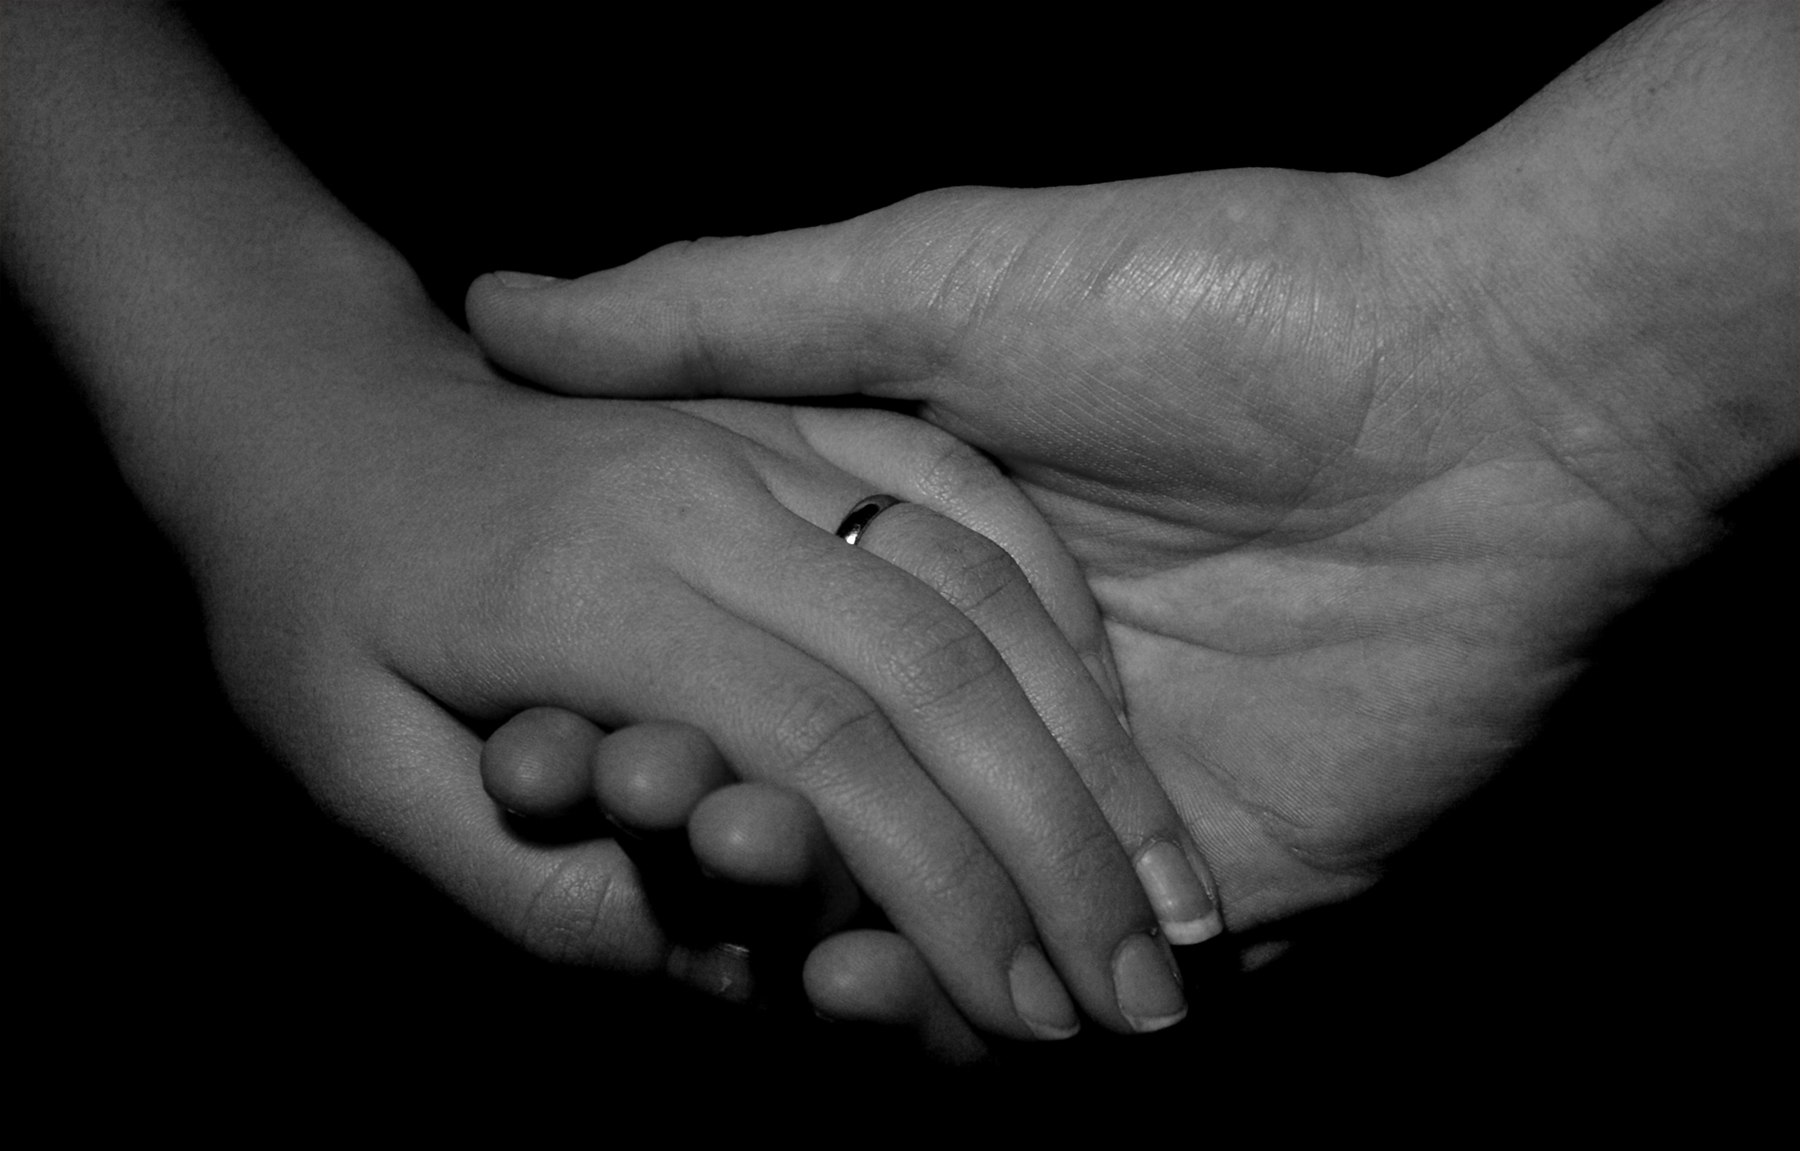 Баба рука мужика. Мужская рука. Рука в руке. Мужская и женская рука. Мужская и женская рука вместе.